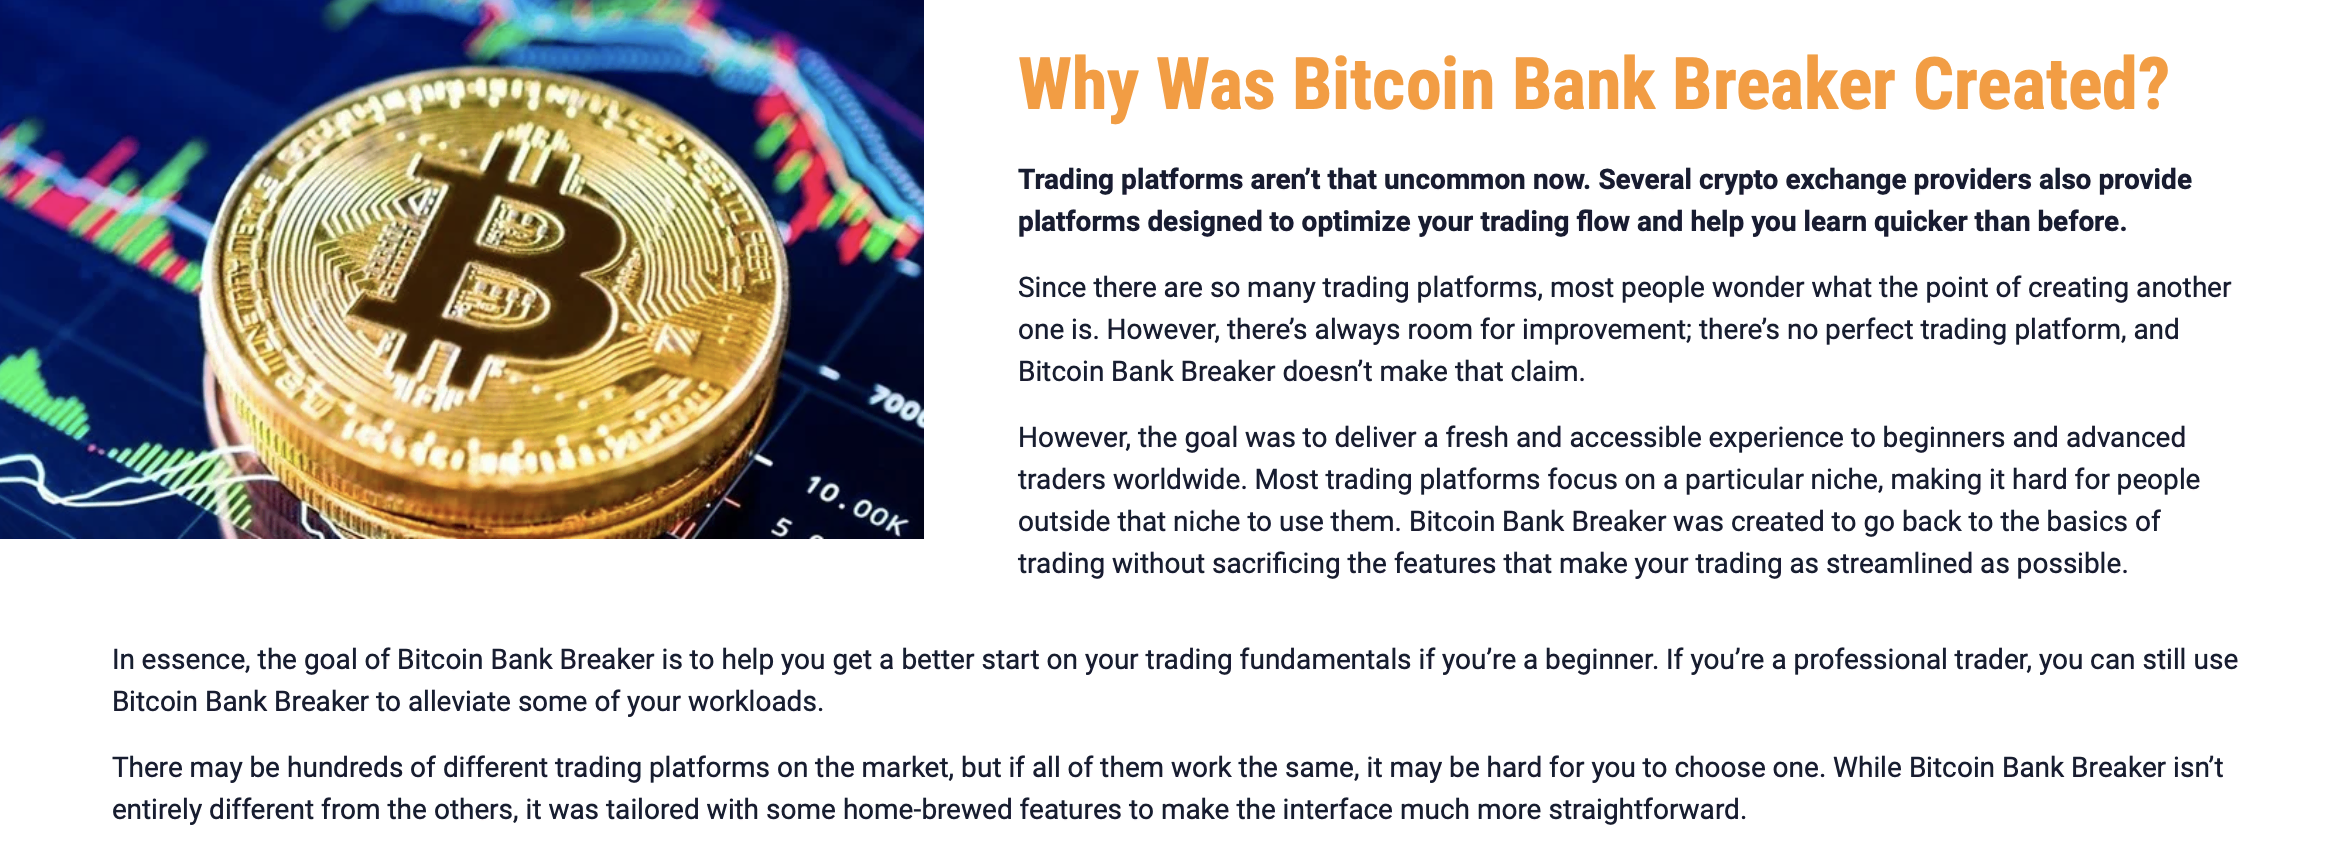 Por qué se creó Bitcoin Bank Breaker